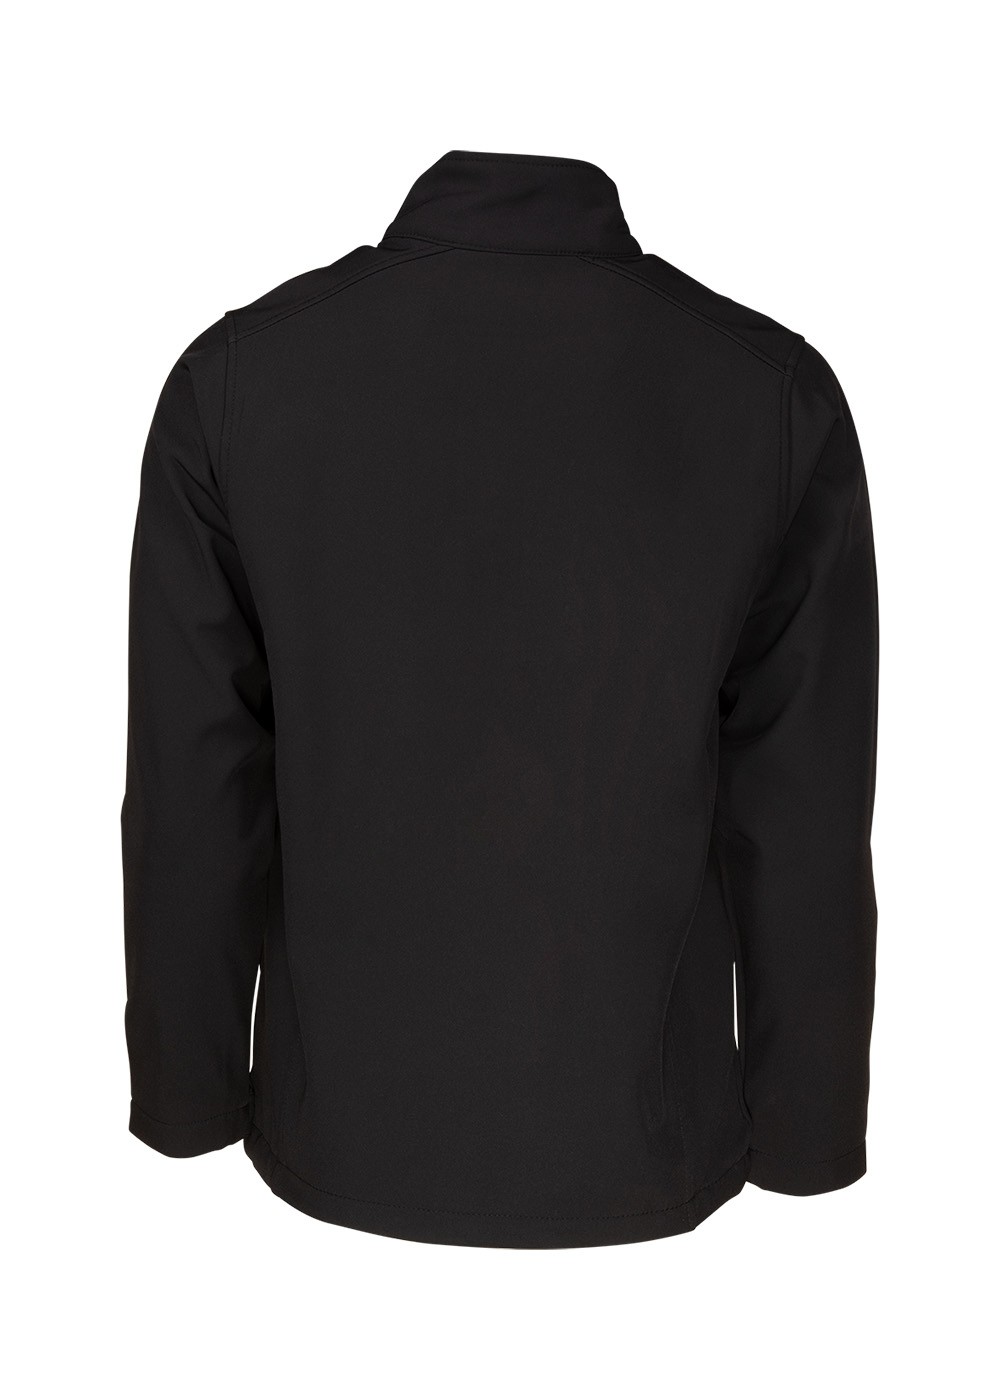 Unisex Softshell Jacket Black